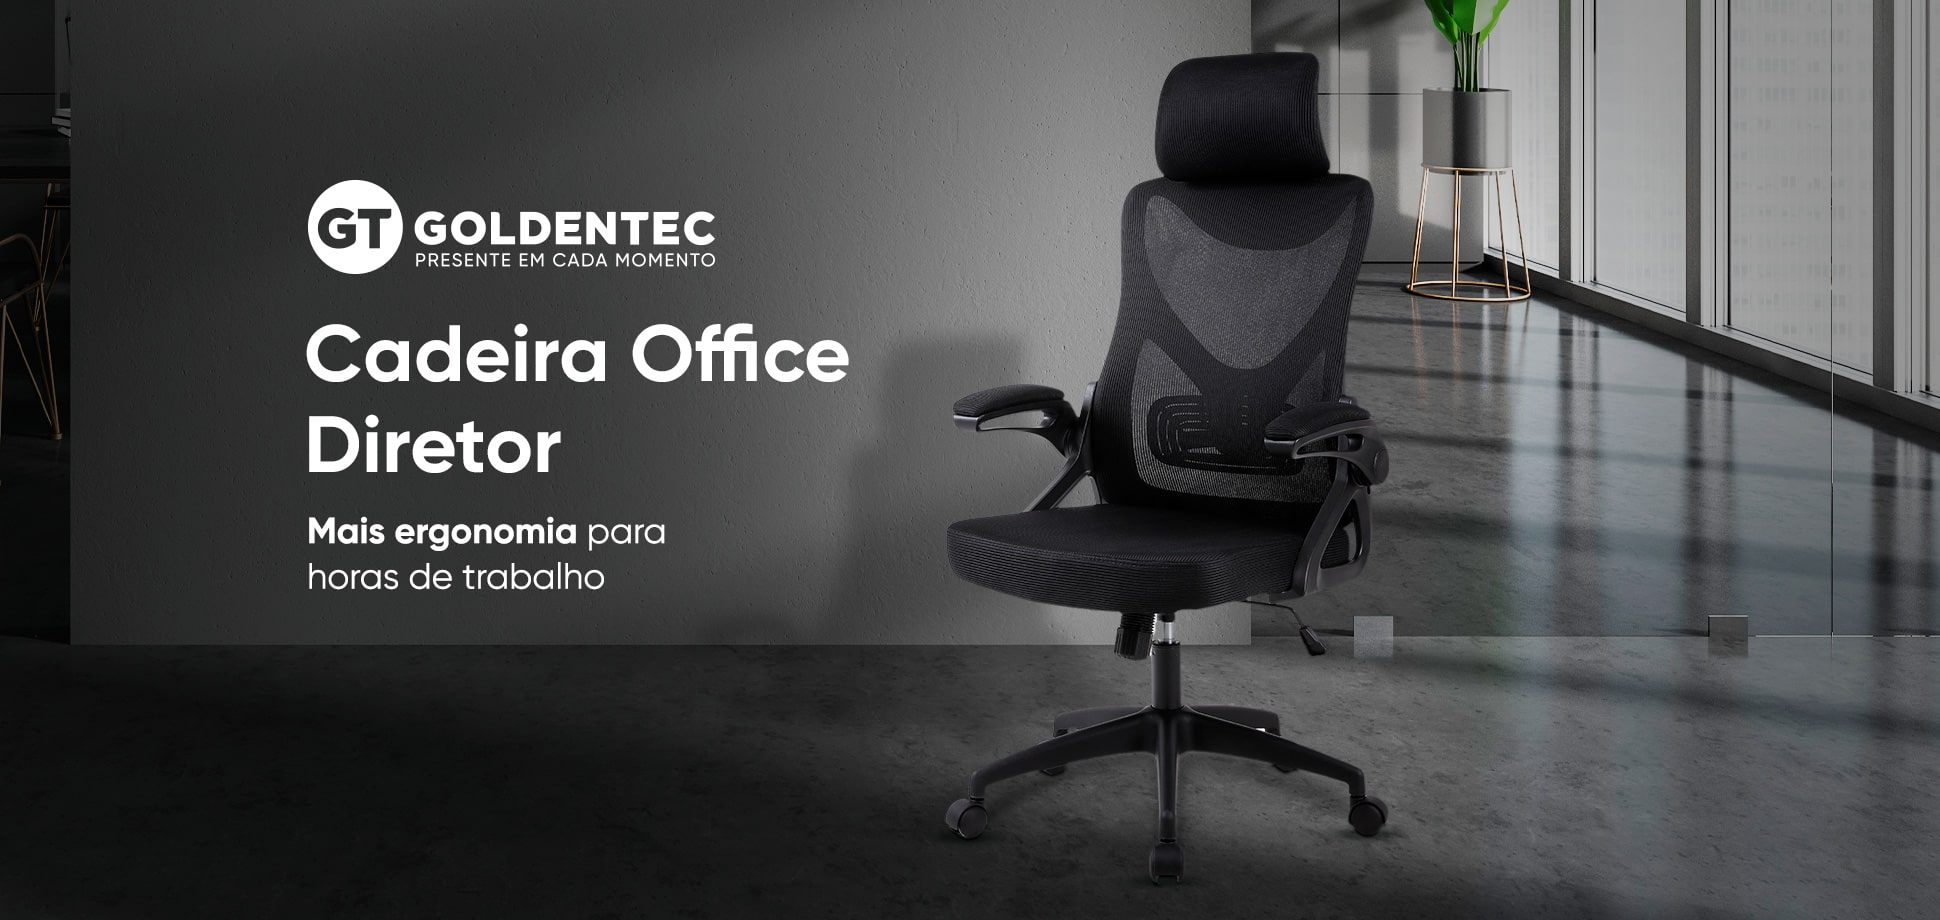 Cadeira Office Goldentec GT Diretor